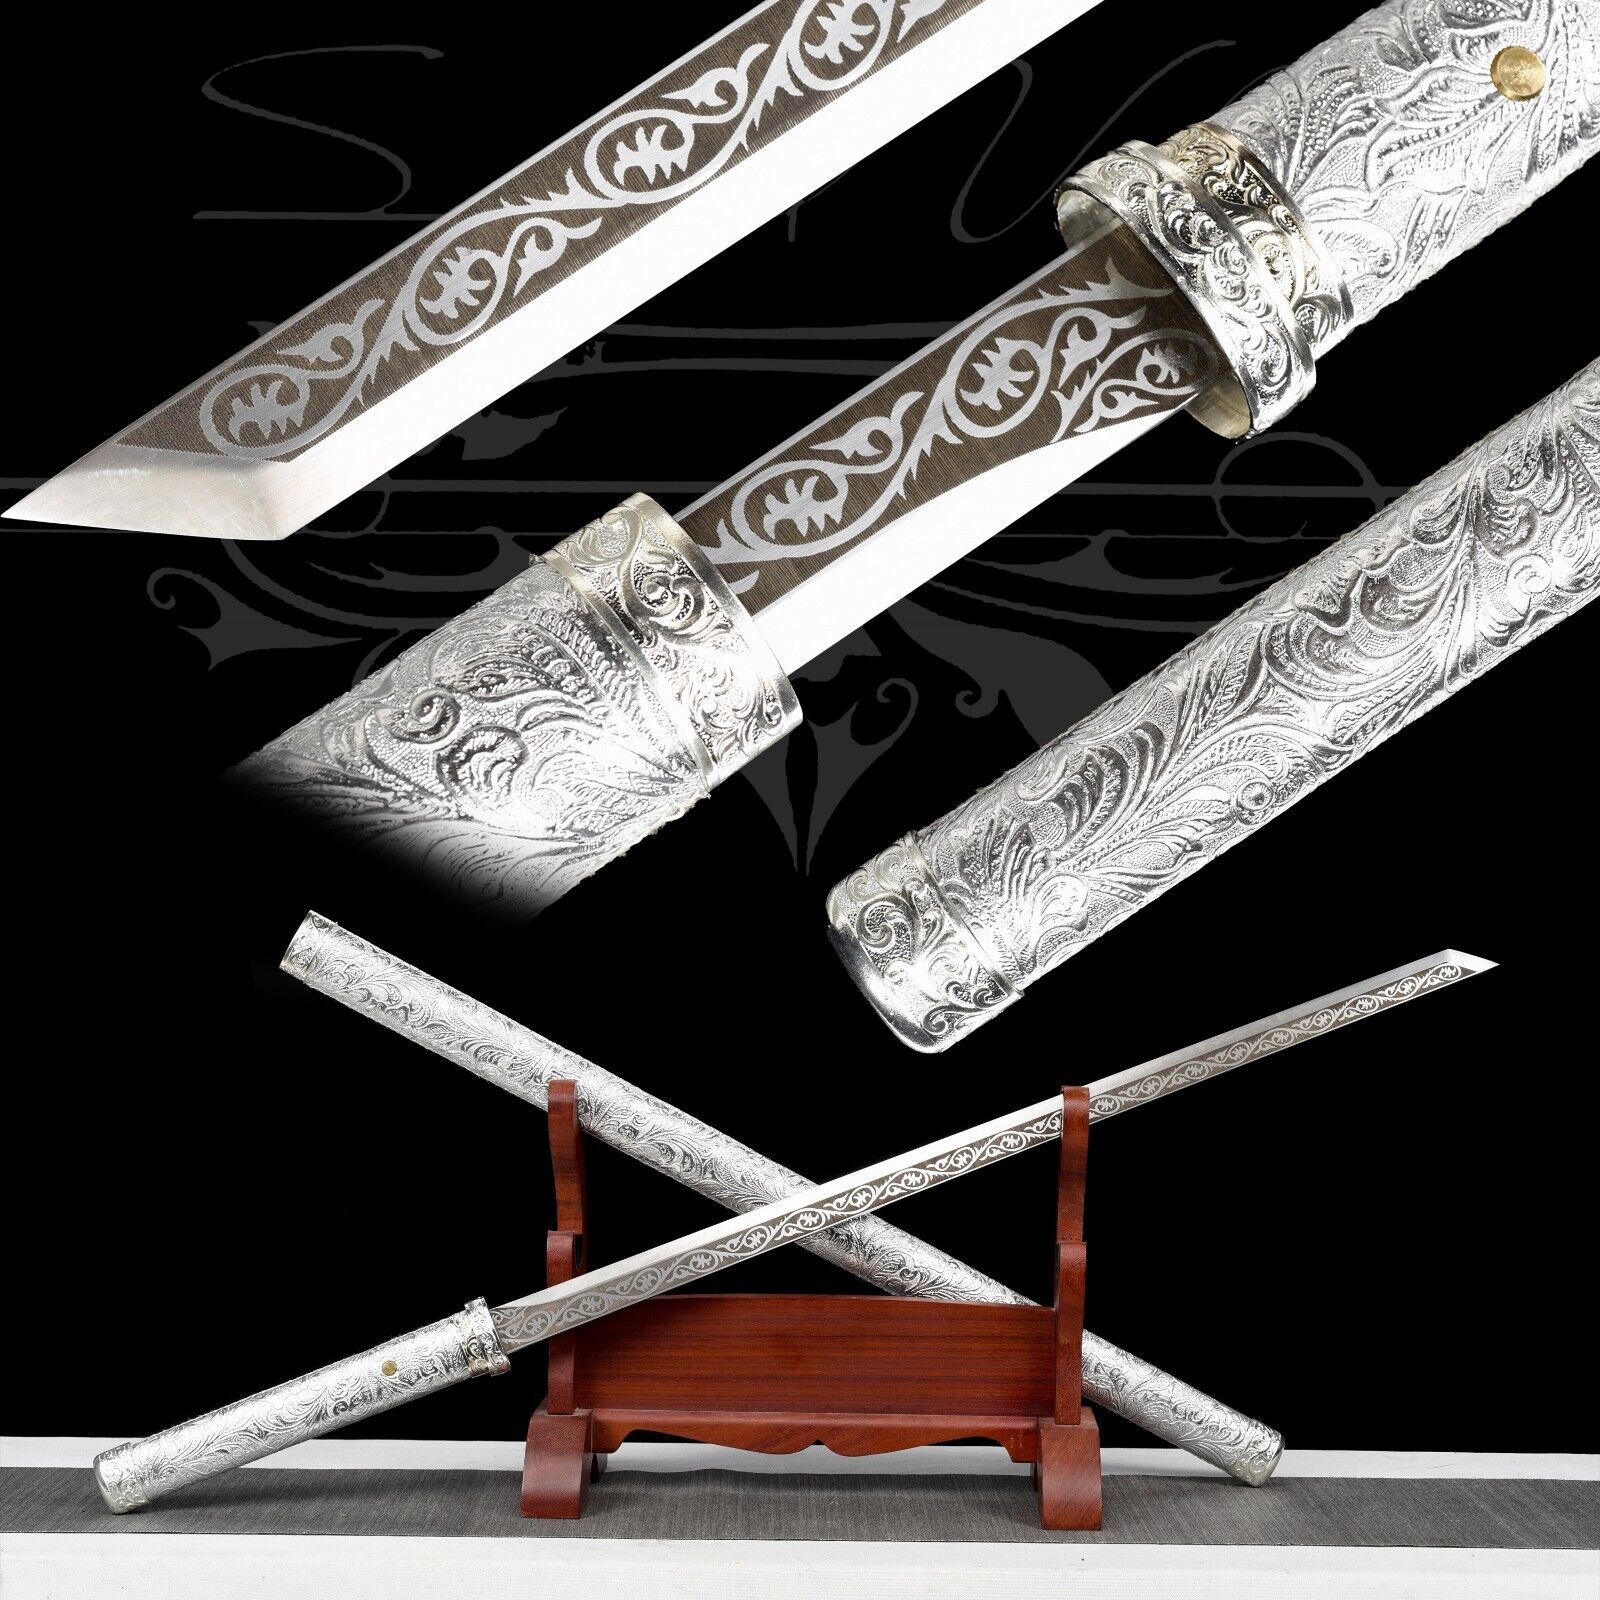 104cm/Handmade Katana/Full Tang/Manganese Steel/Collectible Sword/Sharpened/Real